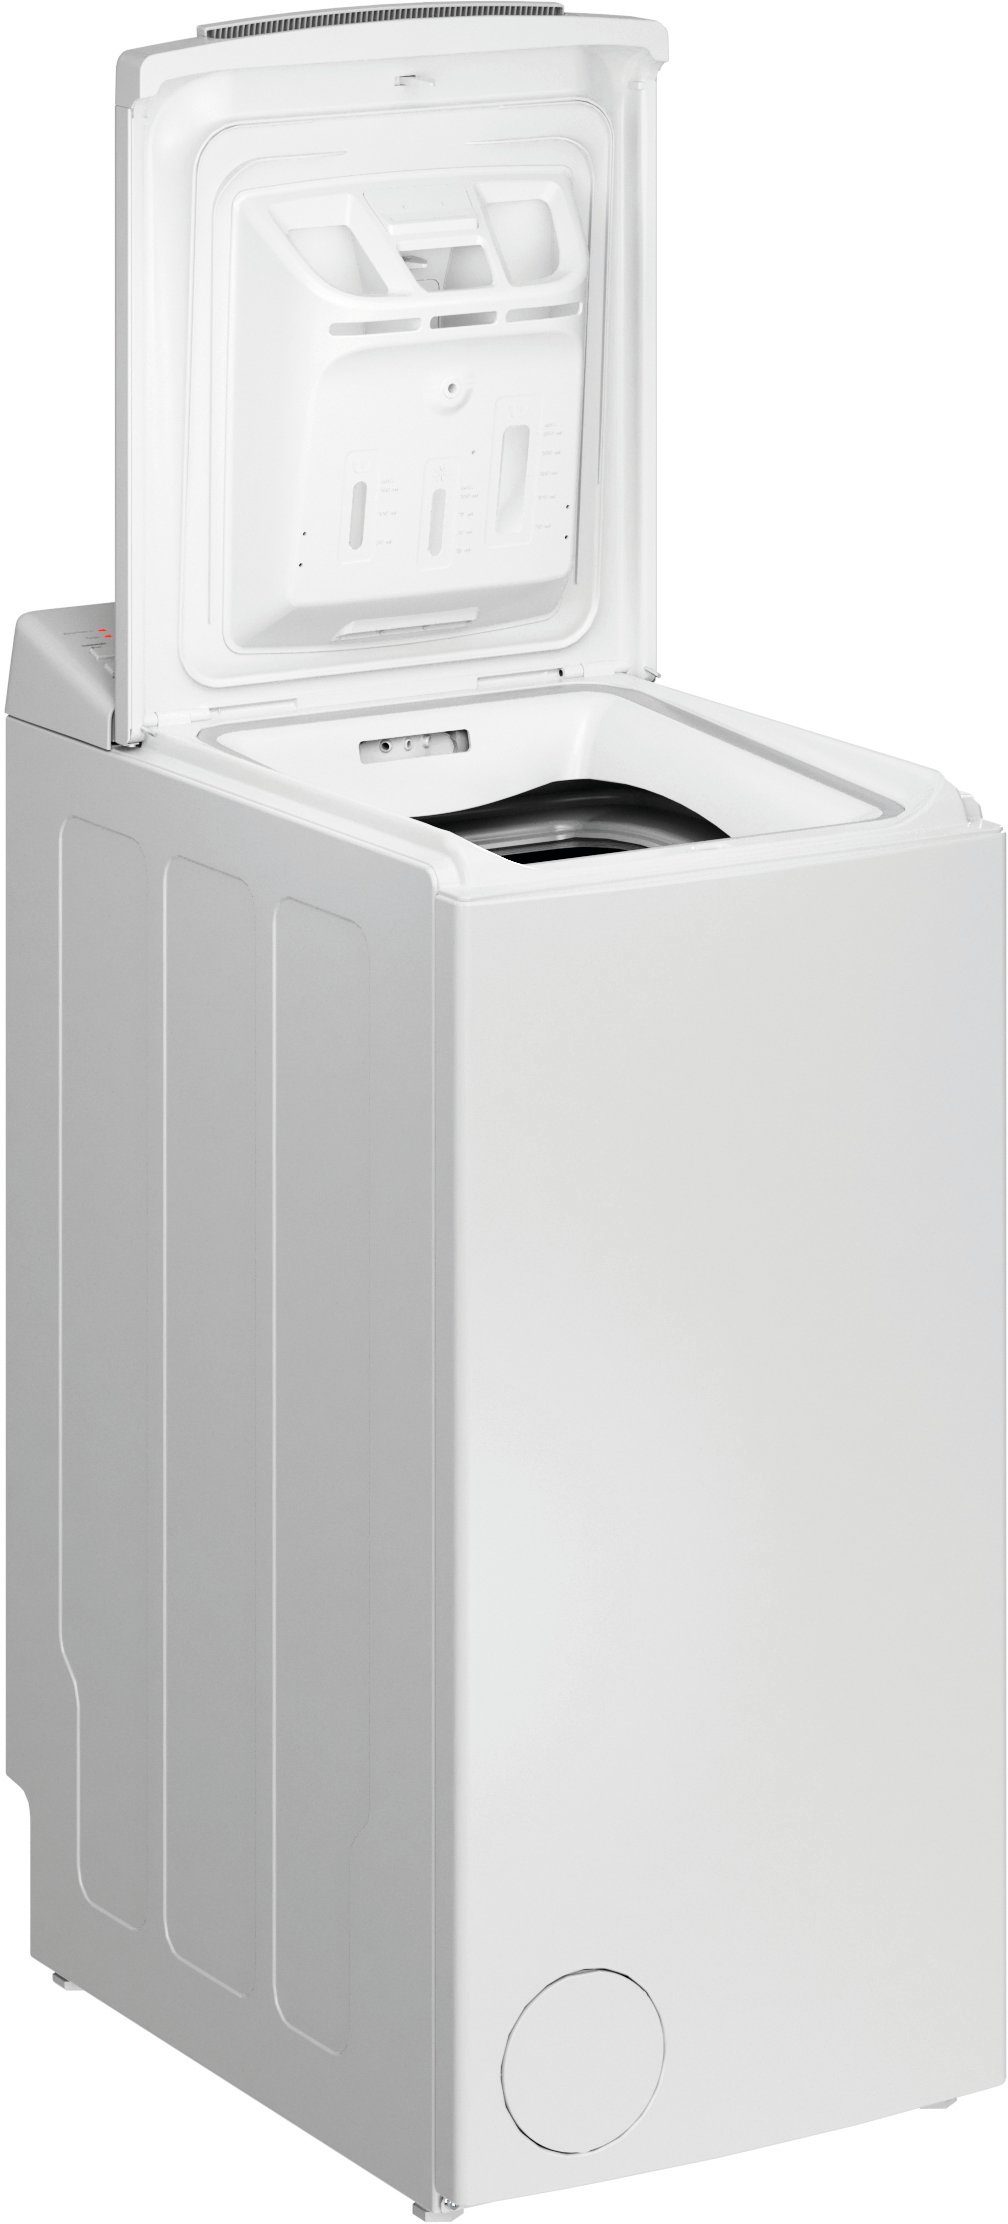 BAUKNECHT Waschmaschine Toplader WMT Eco kg, 6524 1200 Di U/min N, Star 6,5